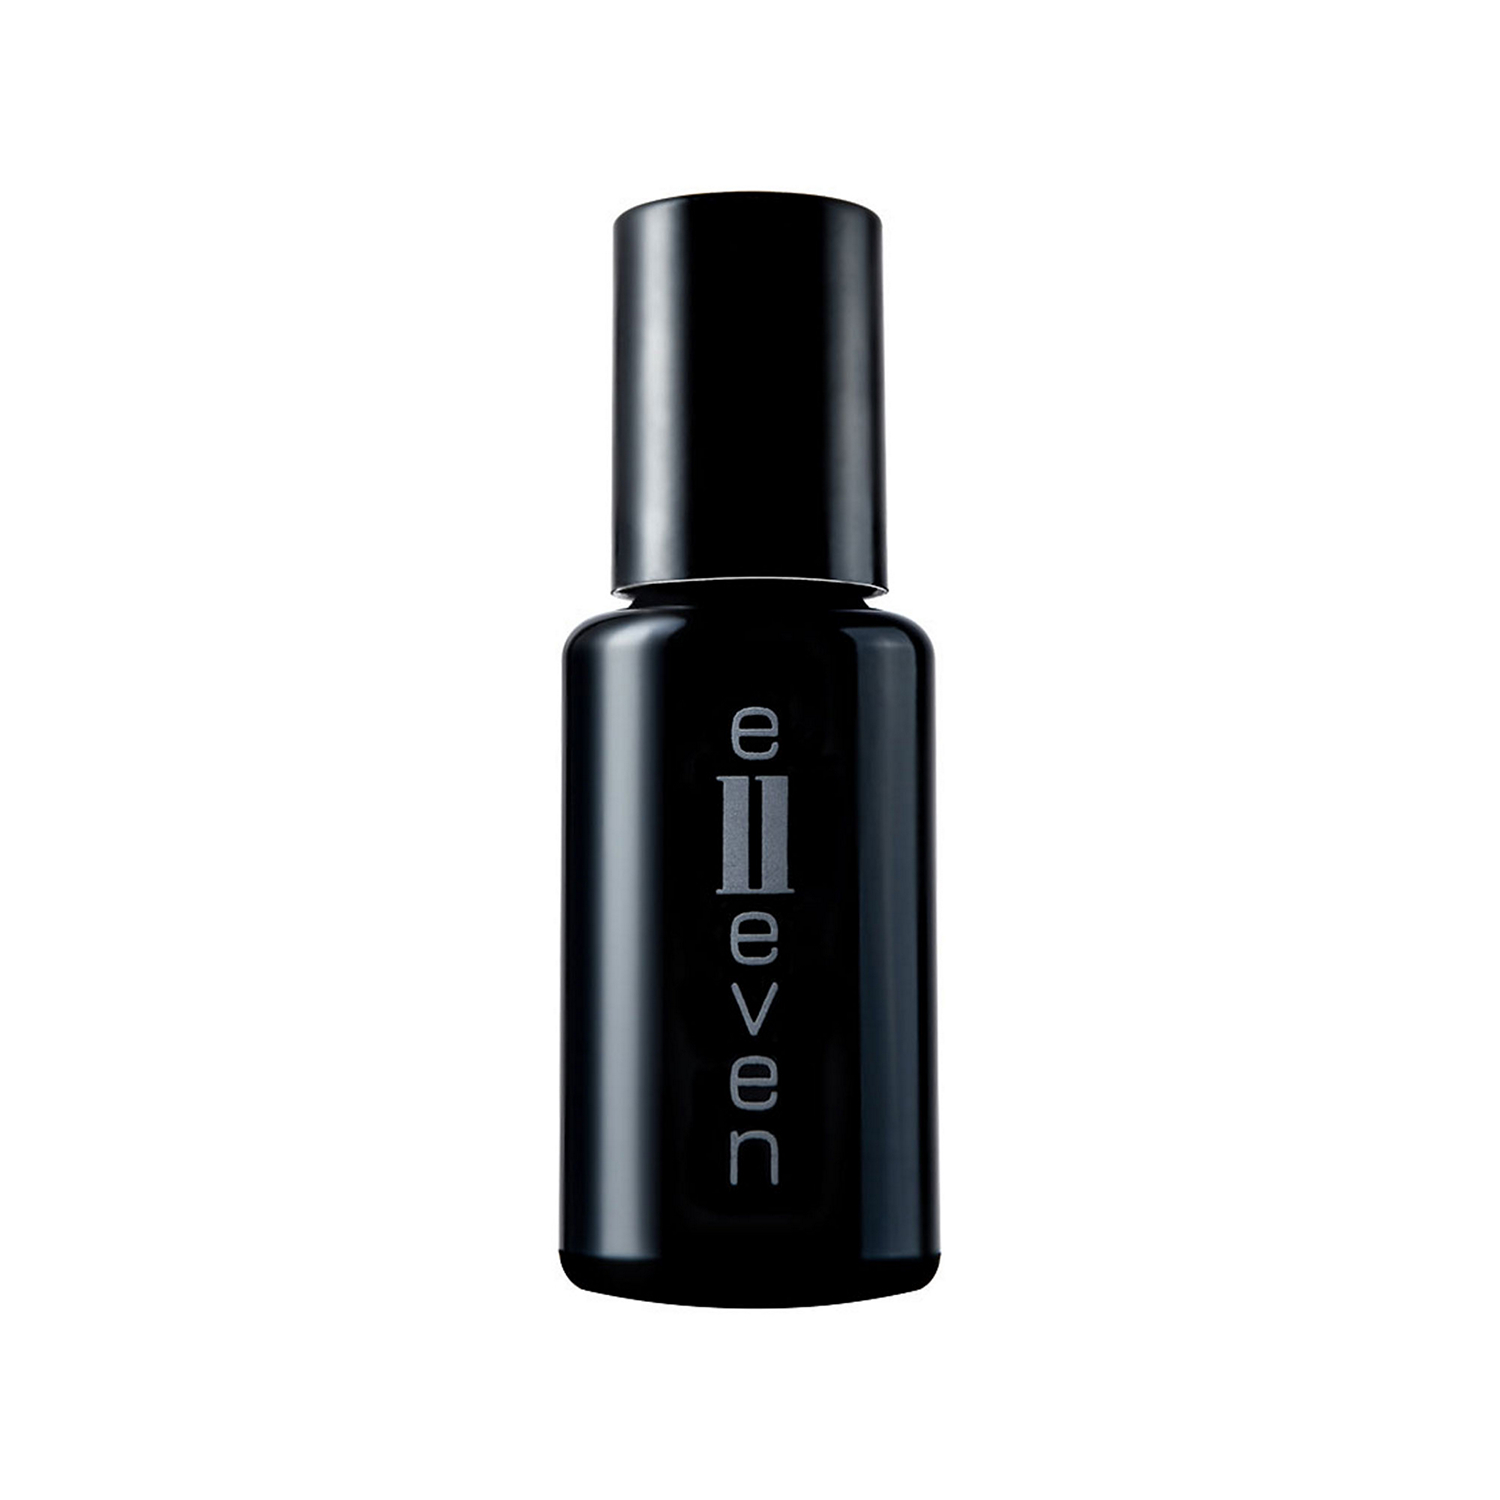 E11even	Perfume Oil